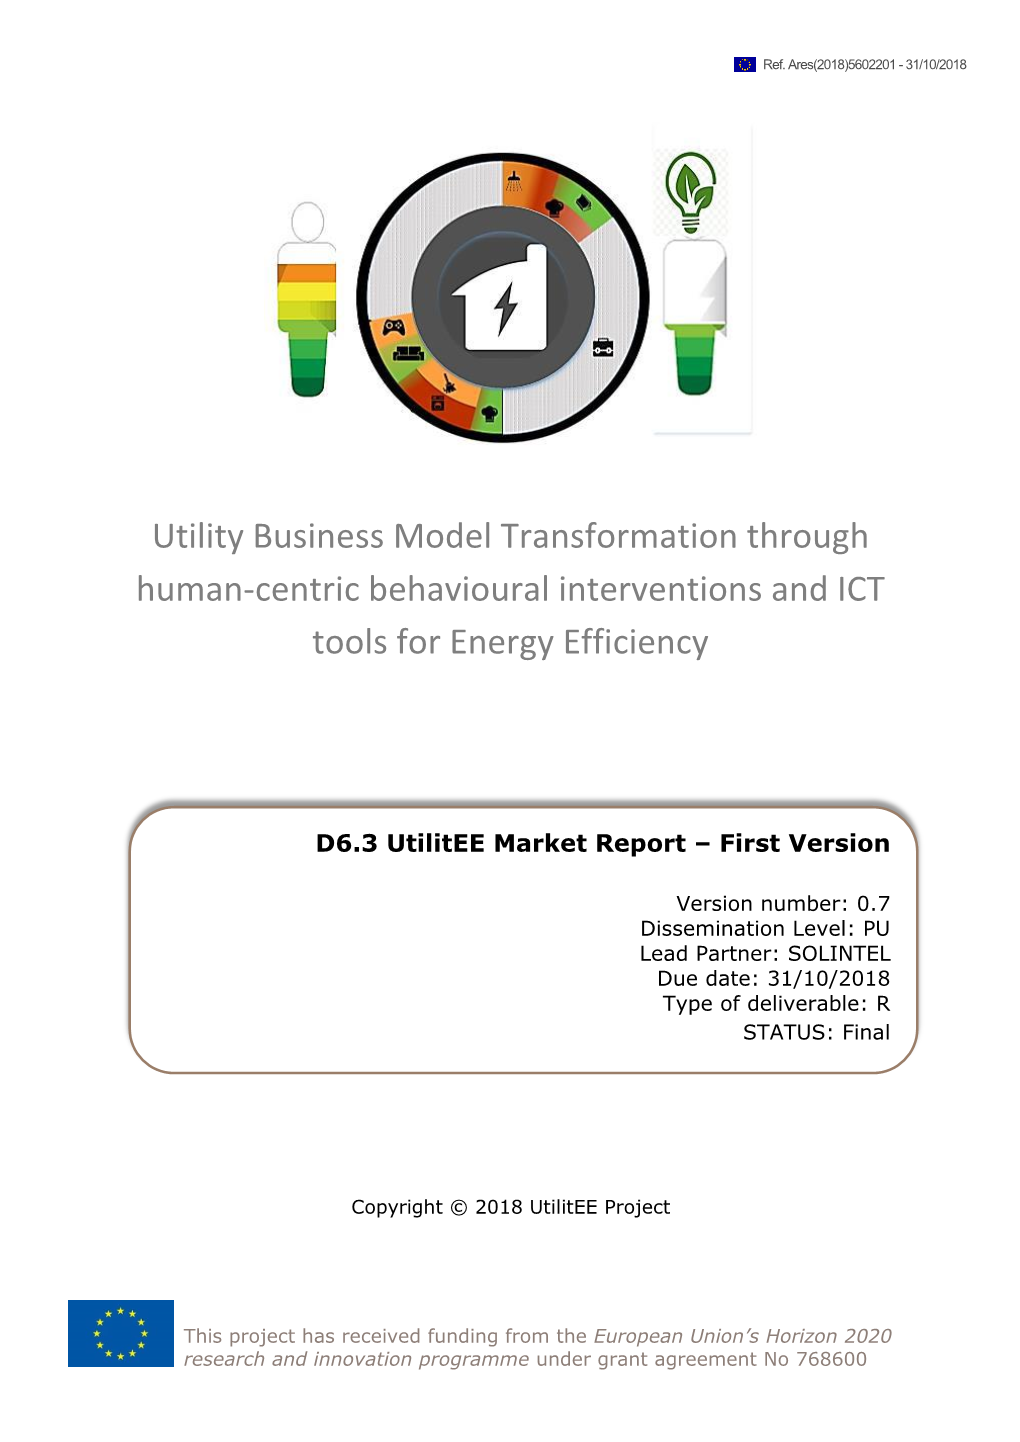 Utilitee Market Analysis Report – First Version”